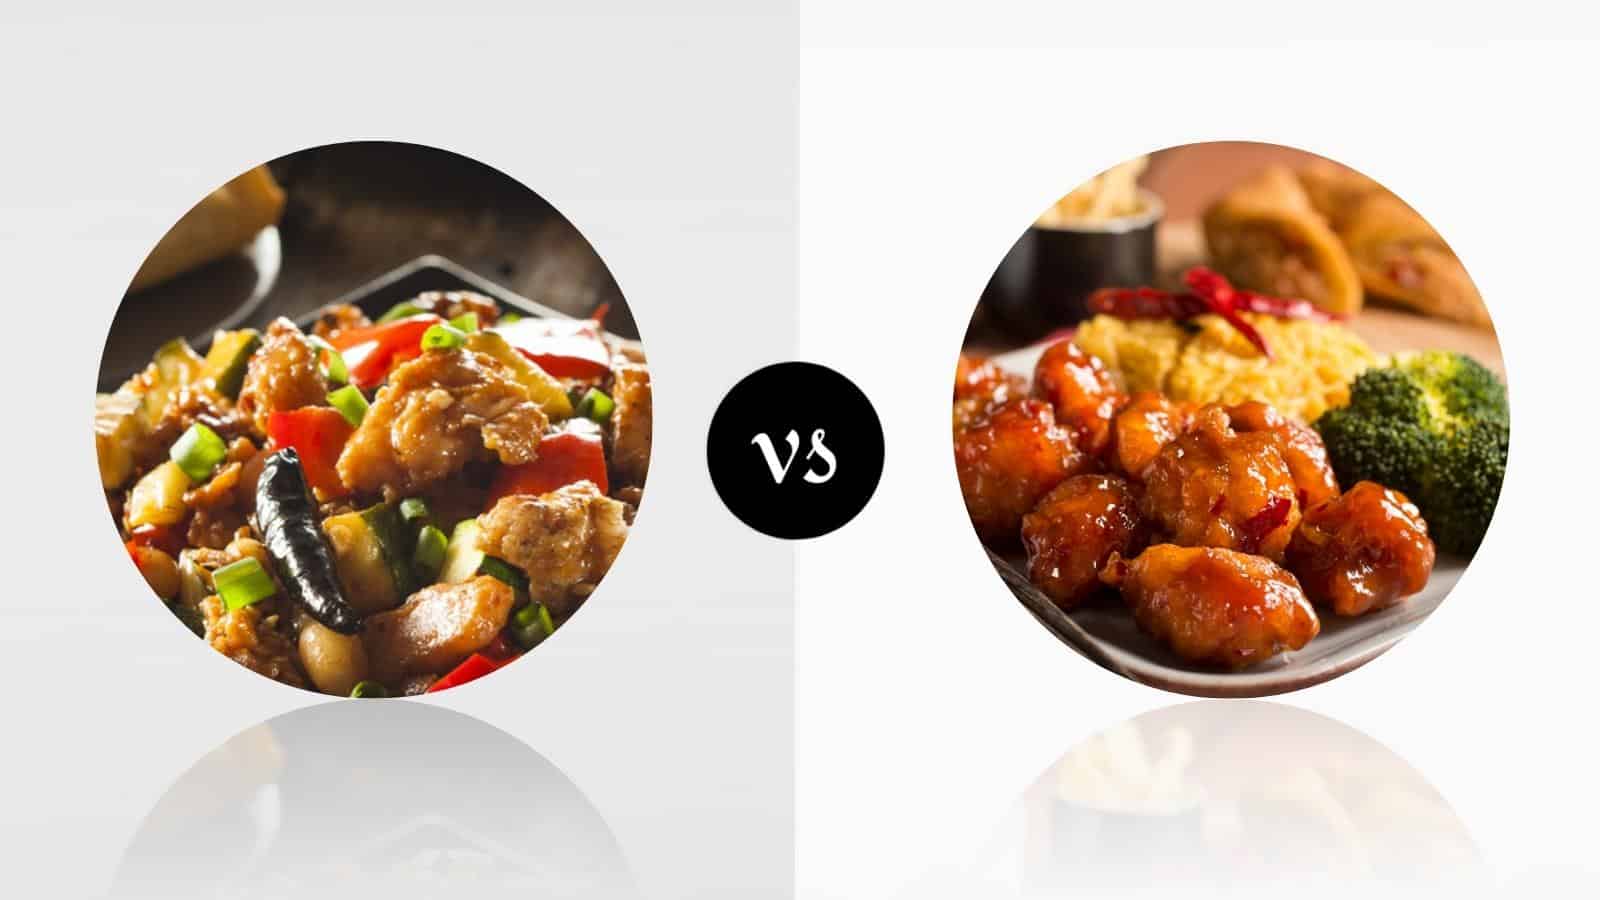 Governor's Chicken vs General Tso